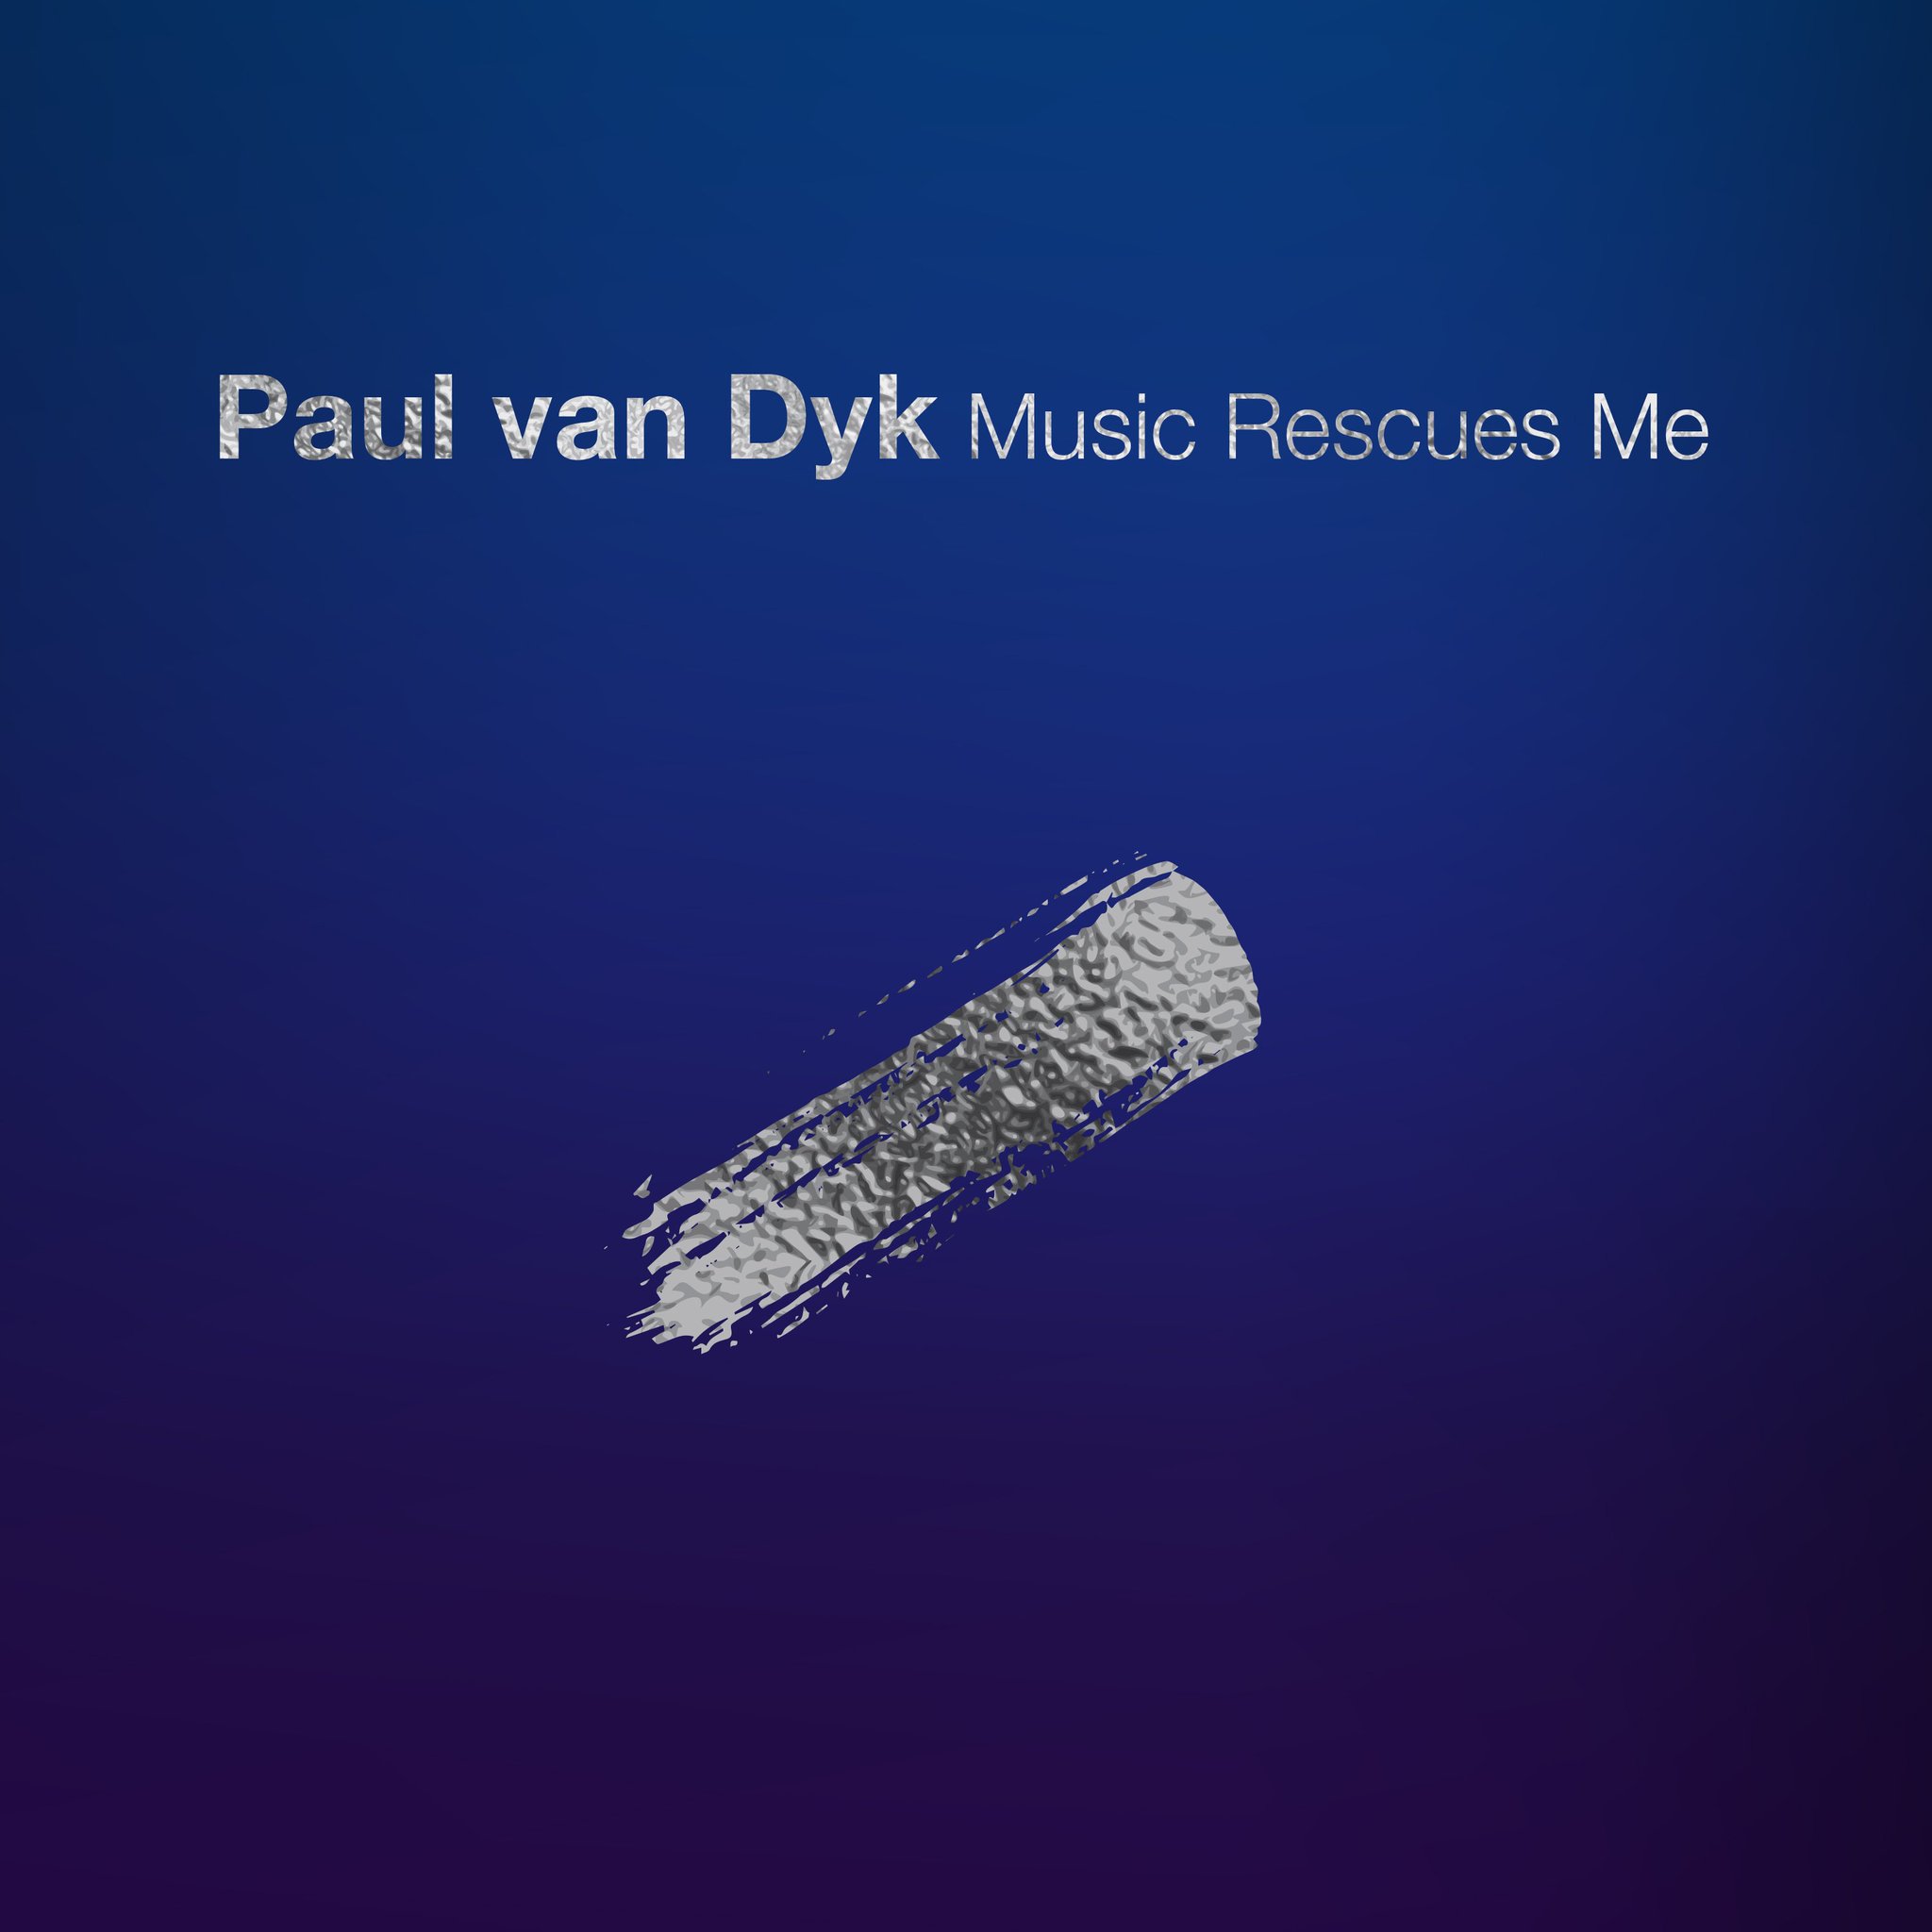 Paul Van Dyk – Music rescues me.